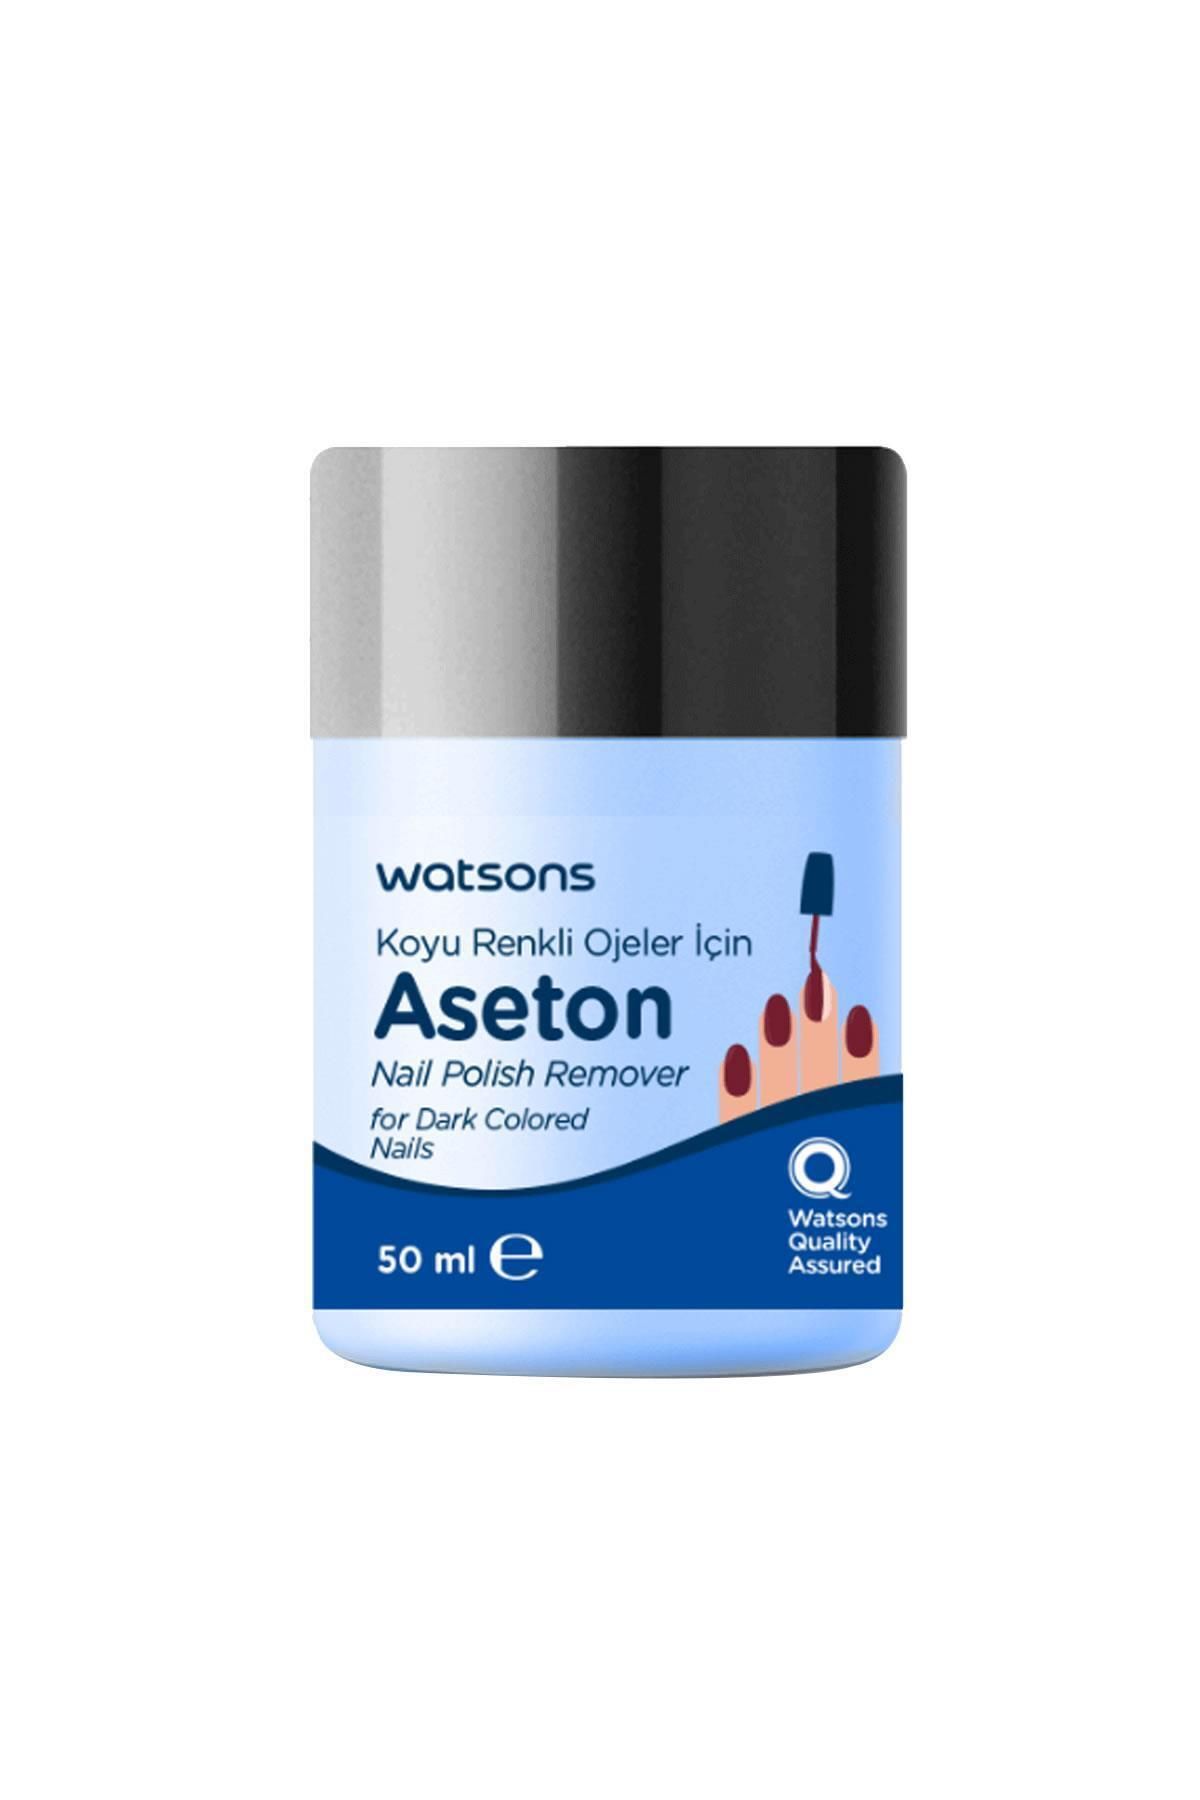 Watsons Koyu Renk Ojeler Için Aseton 50 ml